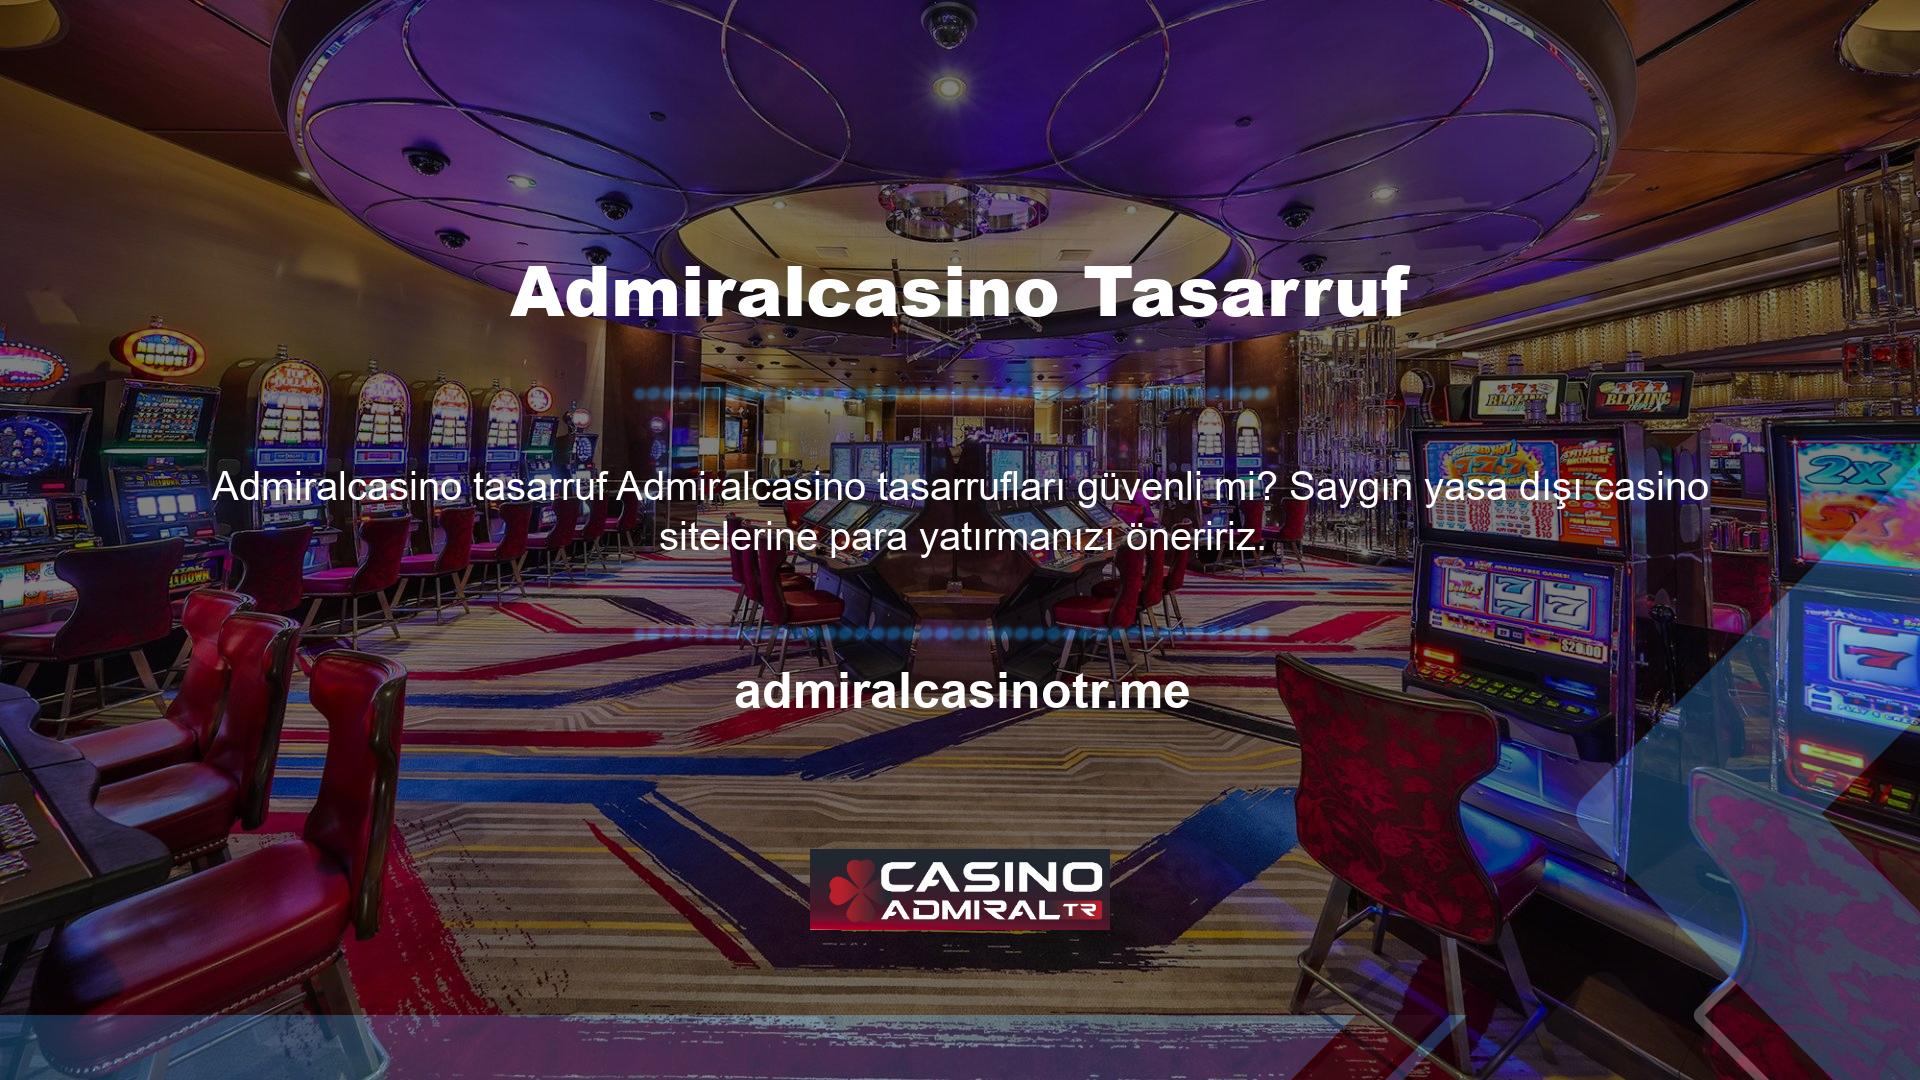 Popüler yasa dışı casino siteleri harcama sorunu yaratmaz